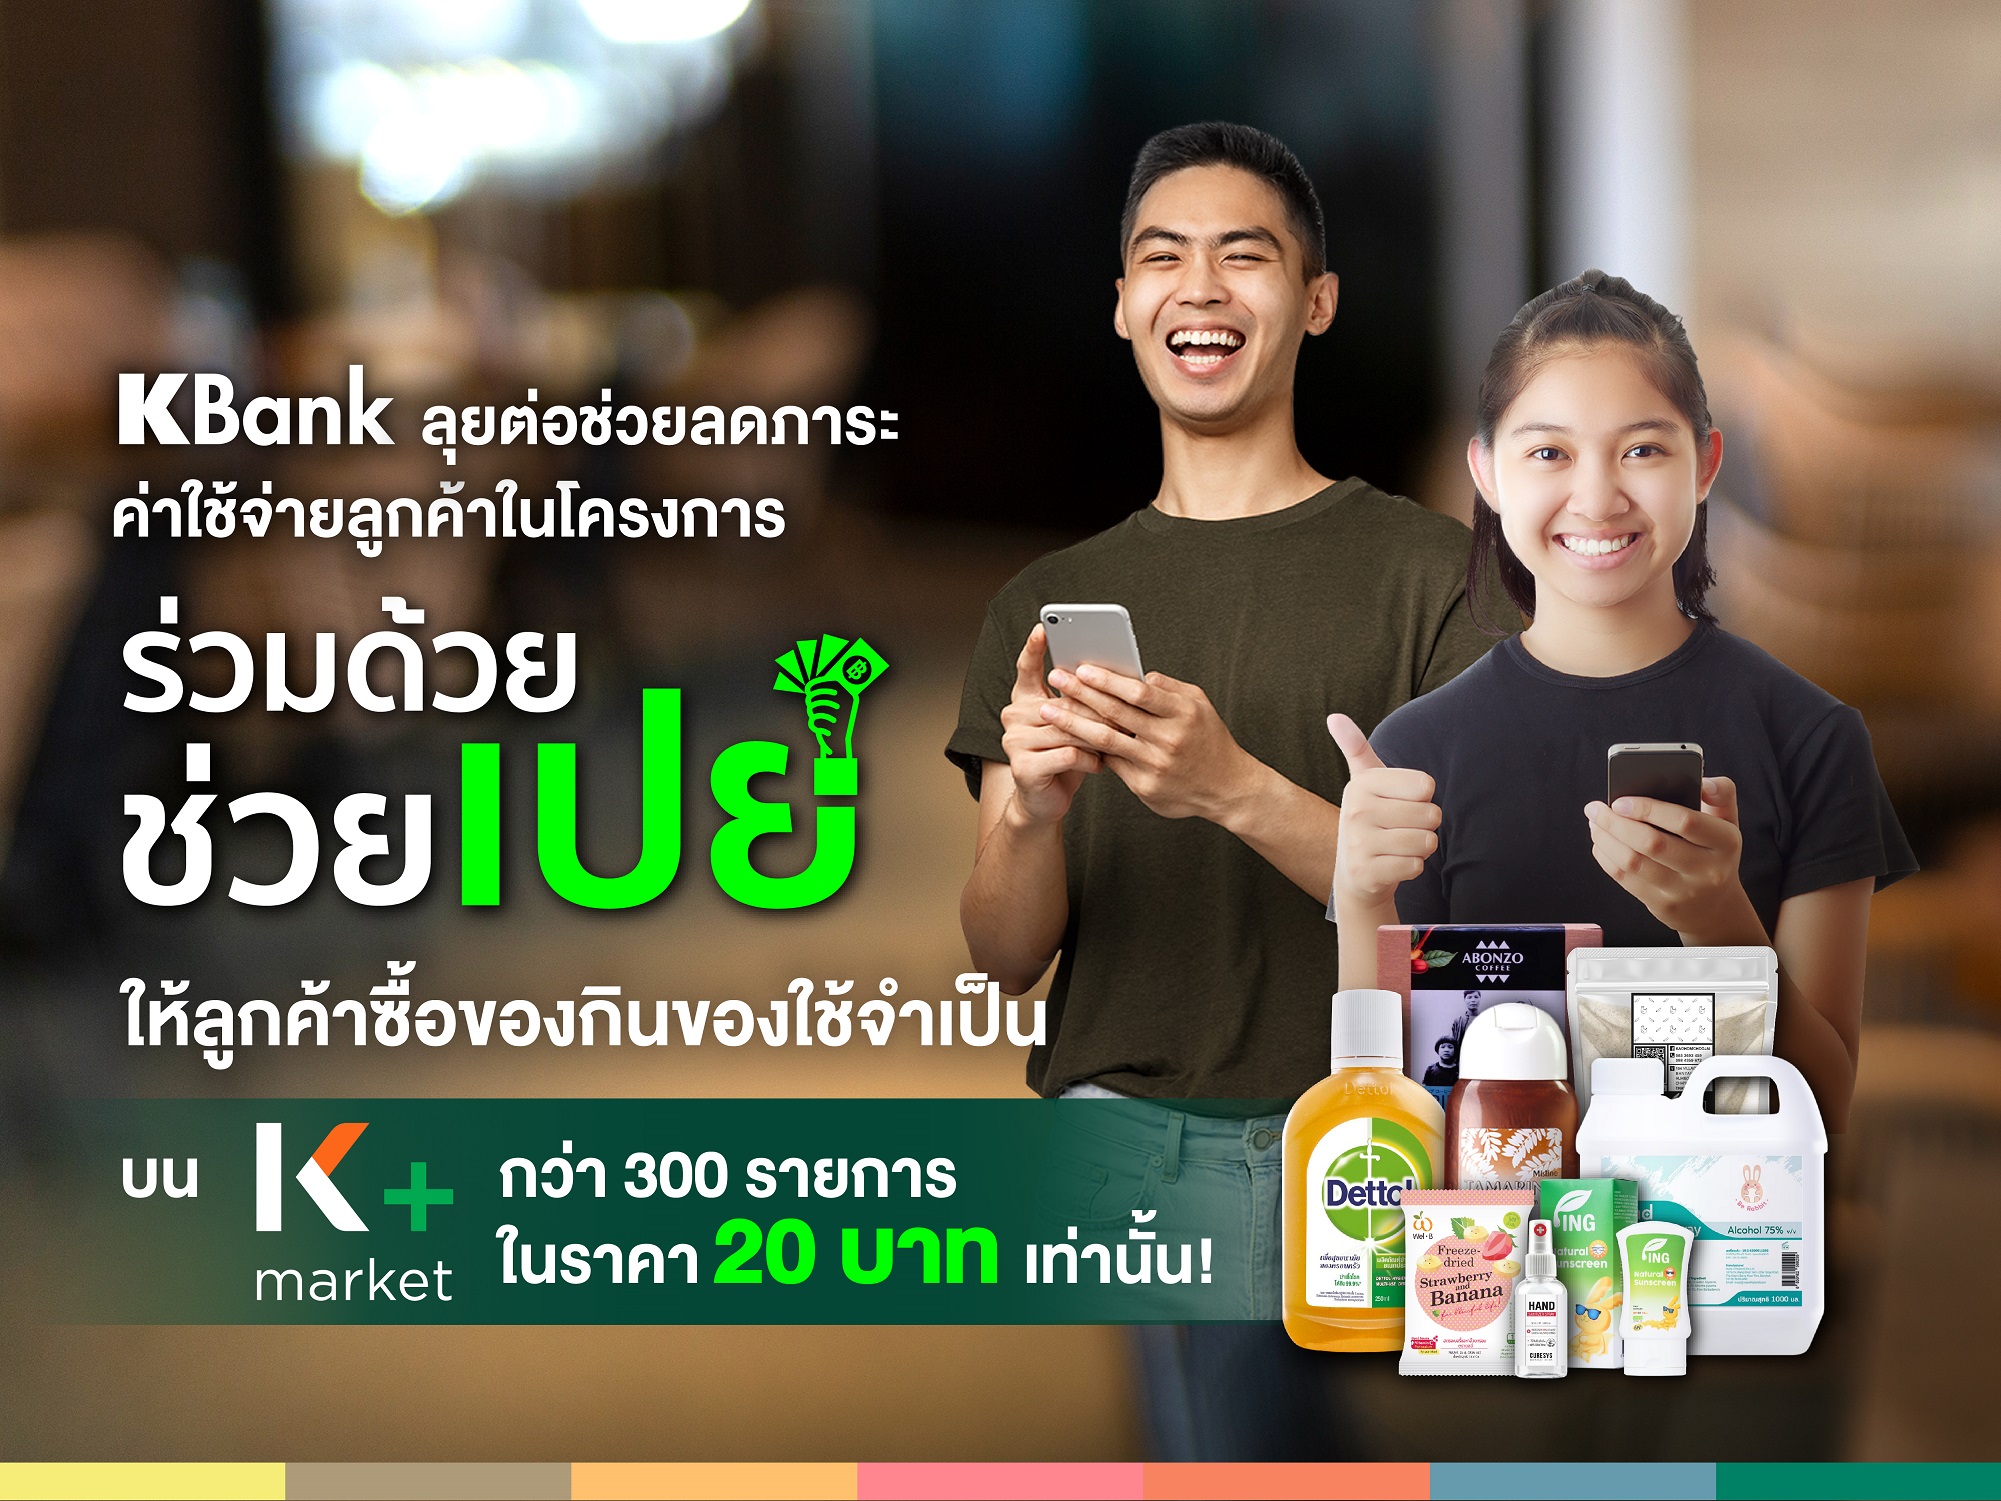 กสิกรไทย ส่ง “ร่วมด้วย ช่วยเปย์” ผ่าน K+market หั่นราคาของกินของใช้เหลือ 20 บาท – การเงิน